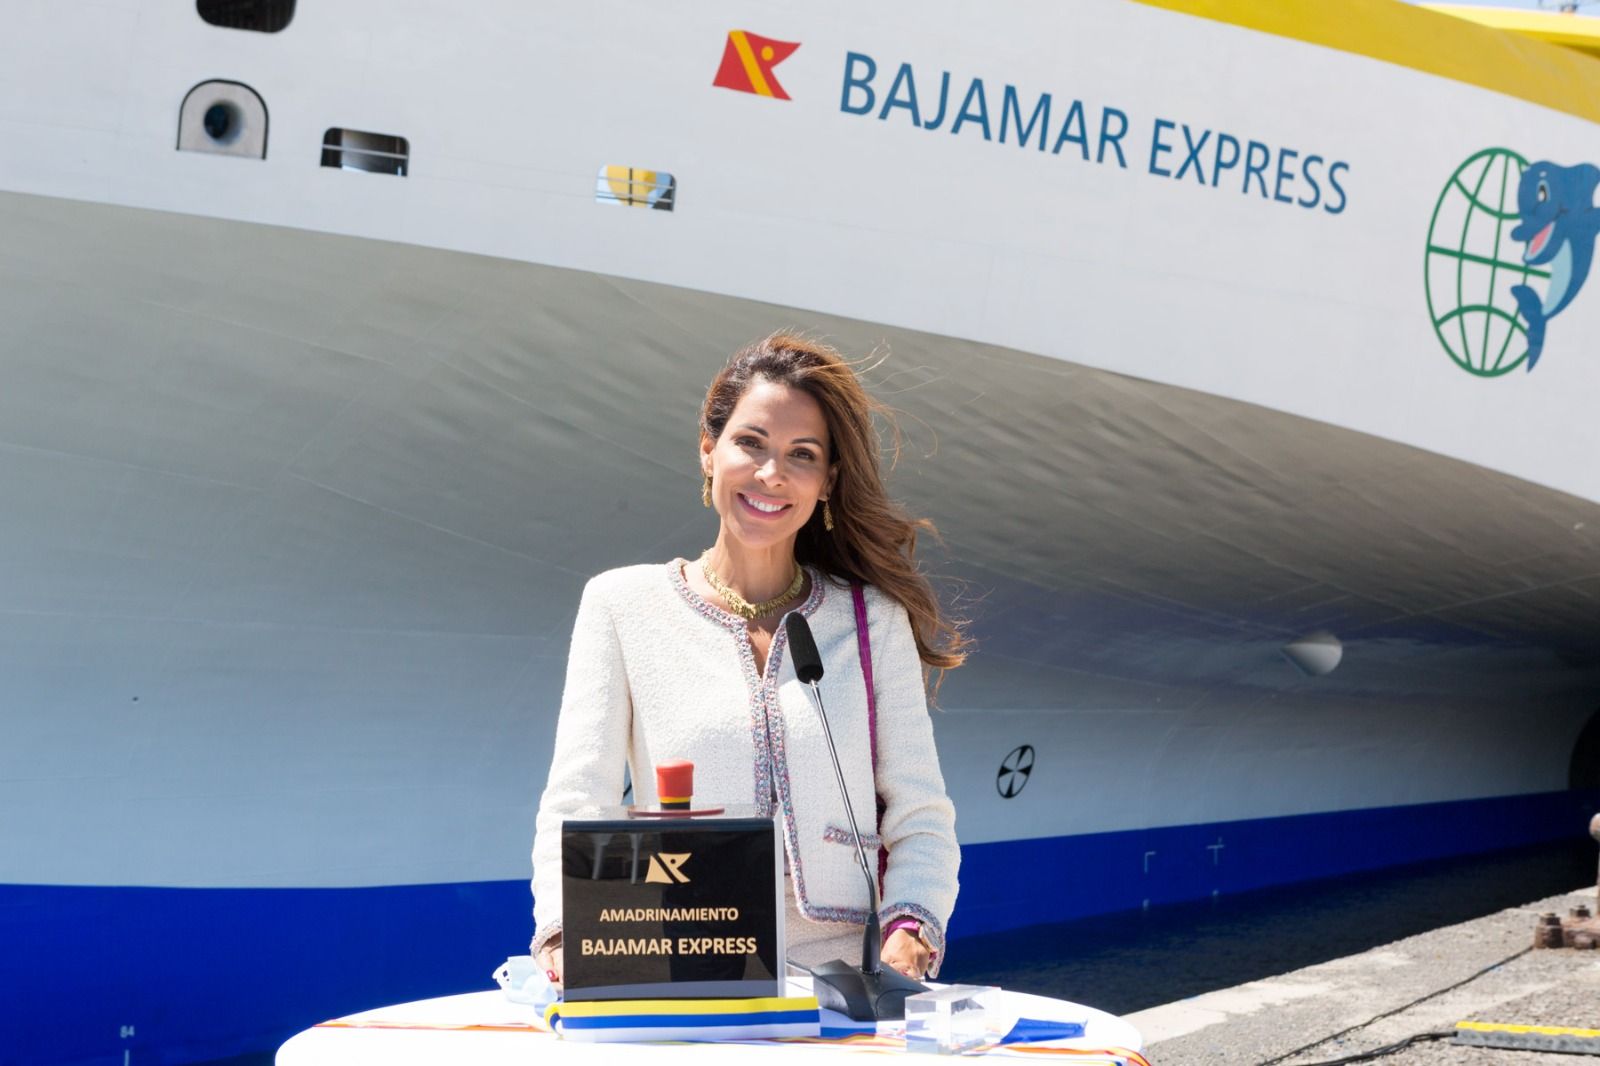 Amadrinamiento del Bajamar Express